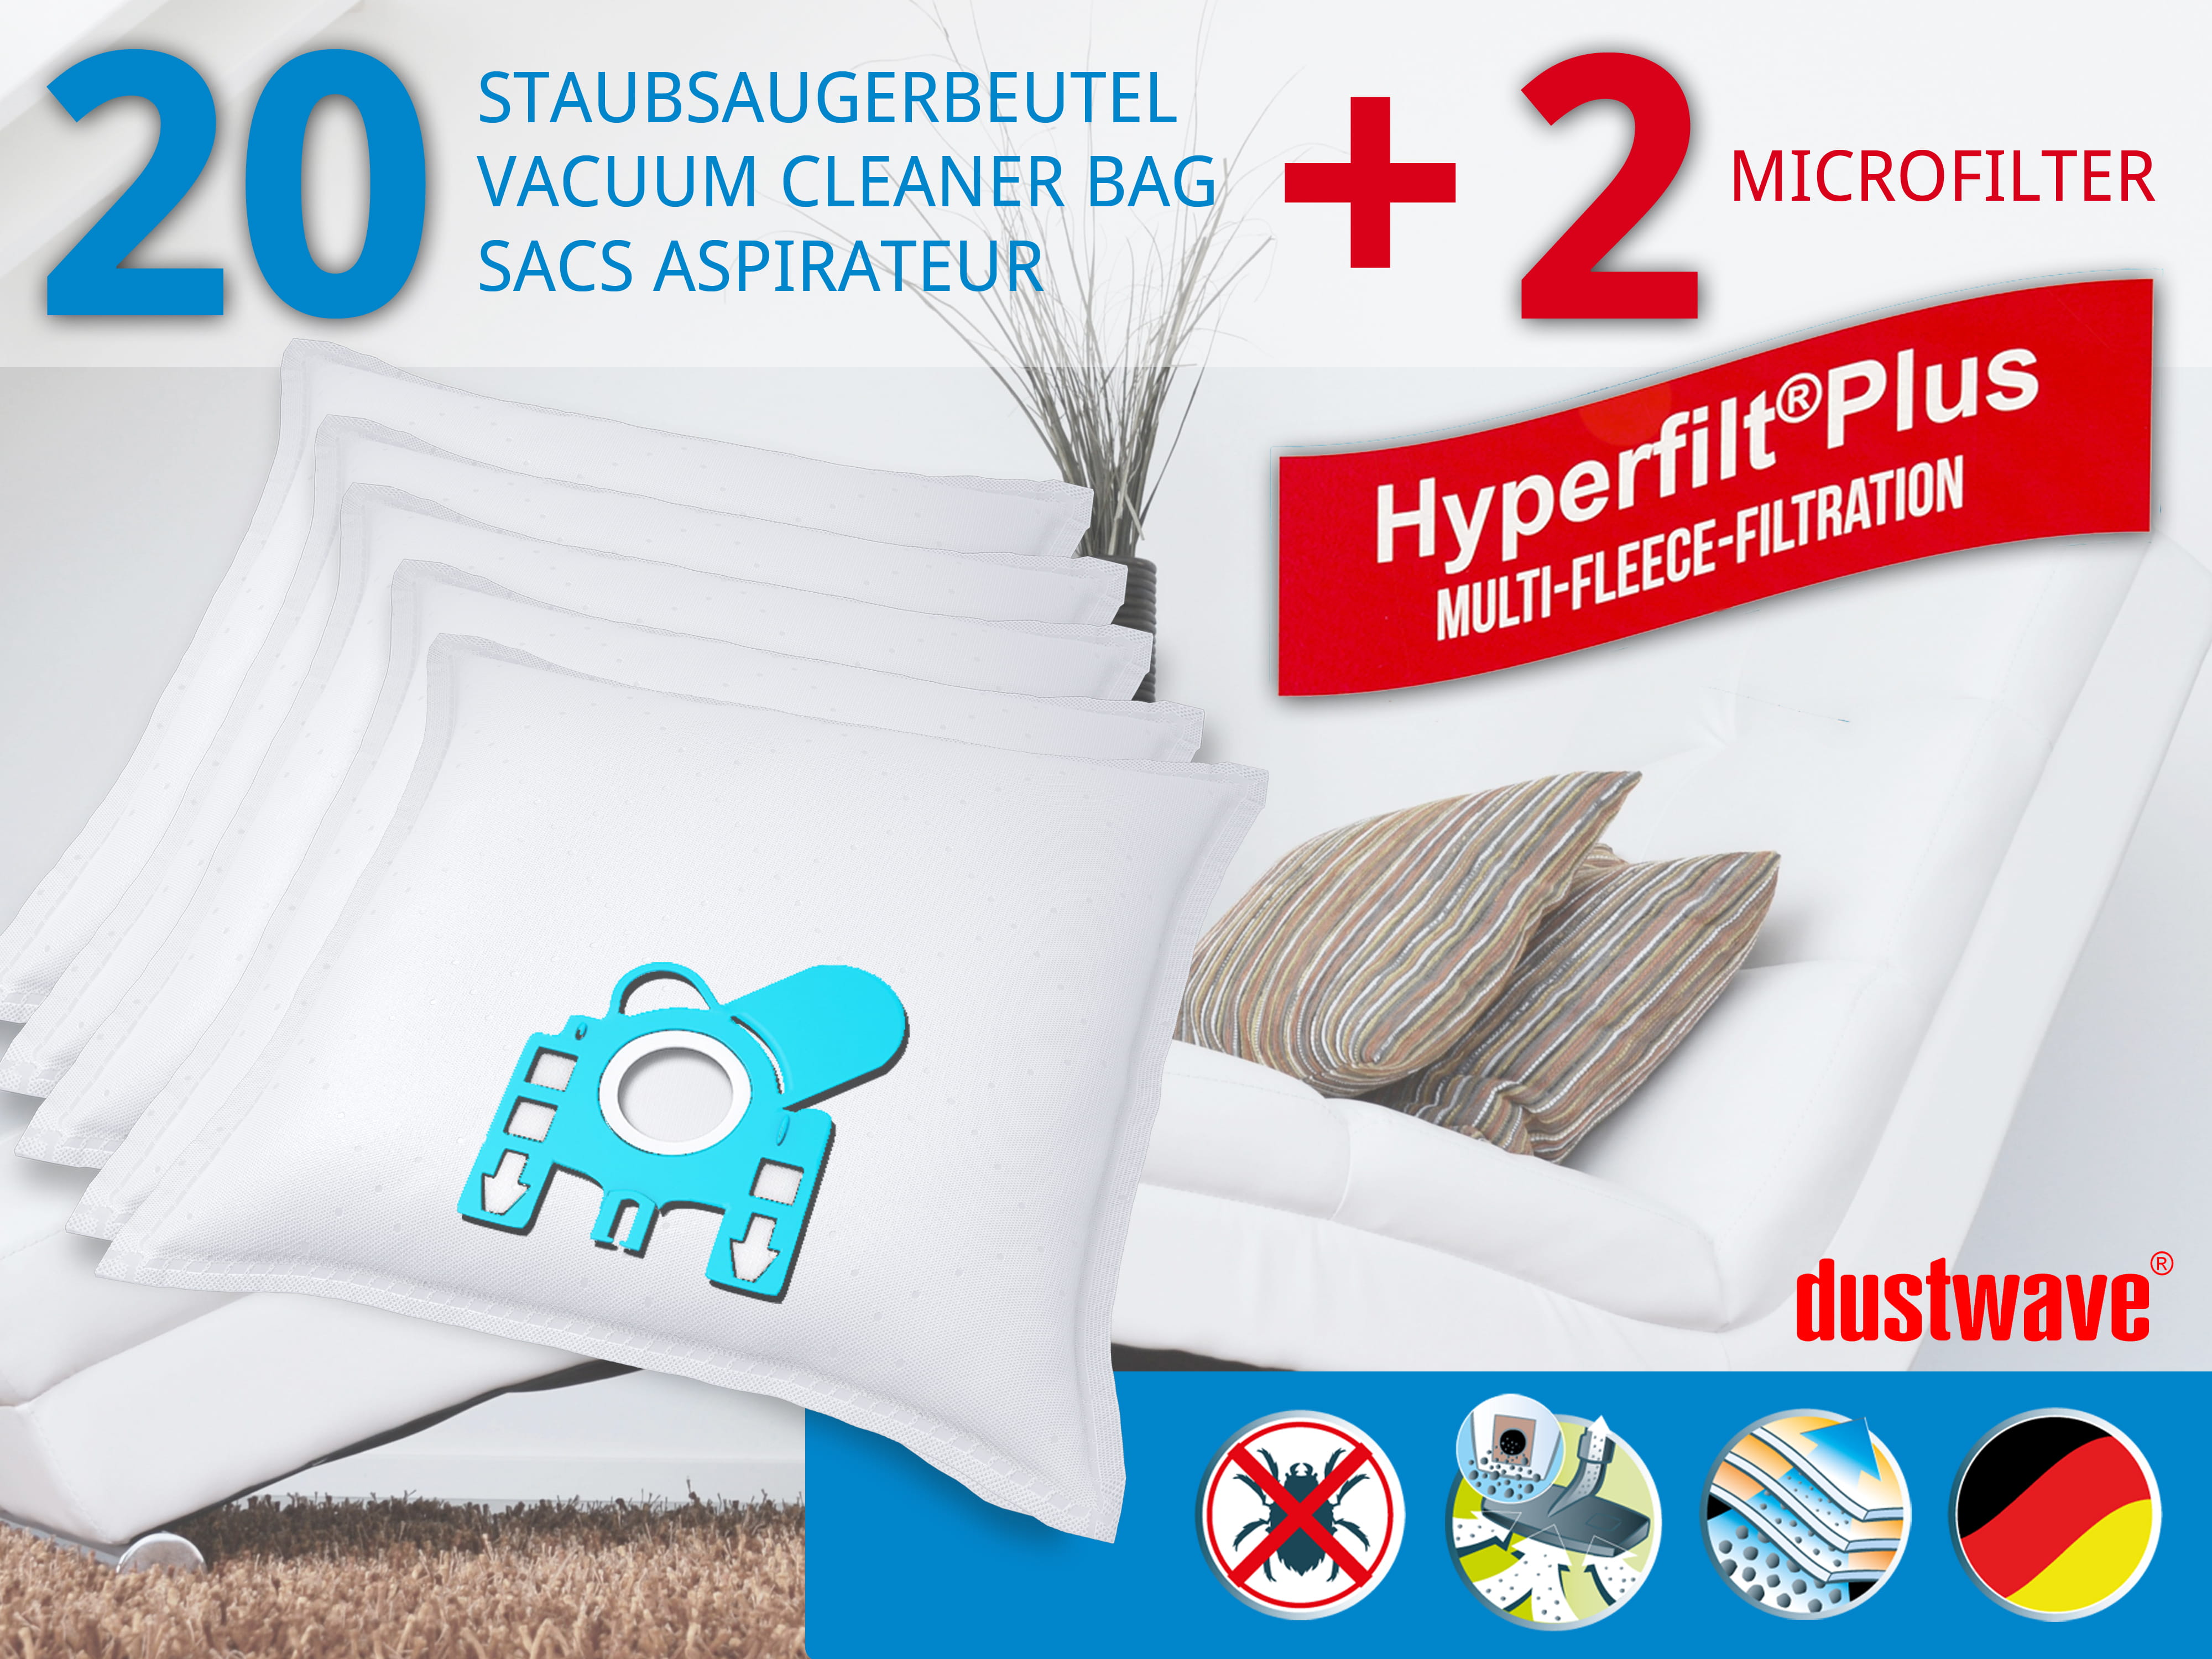 Dustwave® 20 Staubsaugerbeutel für Miele S2130 / S 2130 EcoLine - hocheffizient, mehrlagiges Mikrovlies mit Hygieneverschluss - Made in Germany